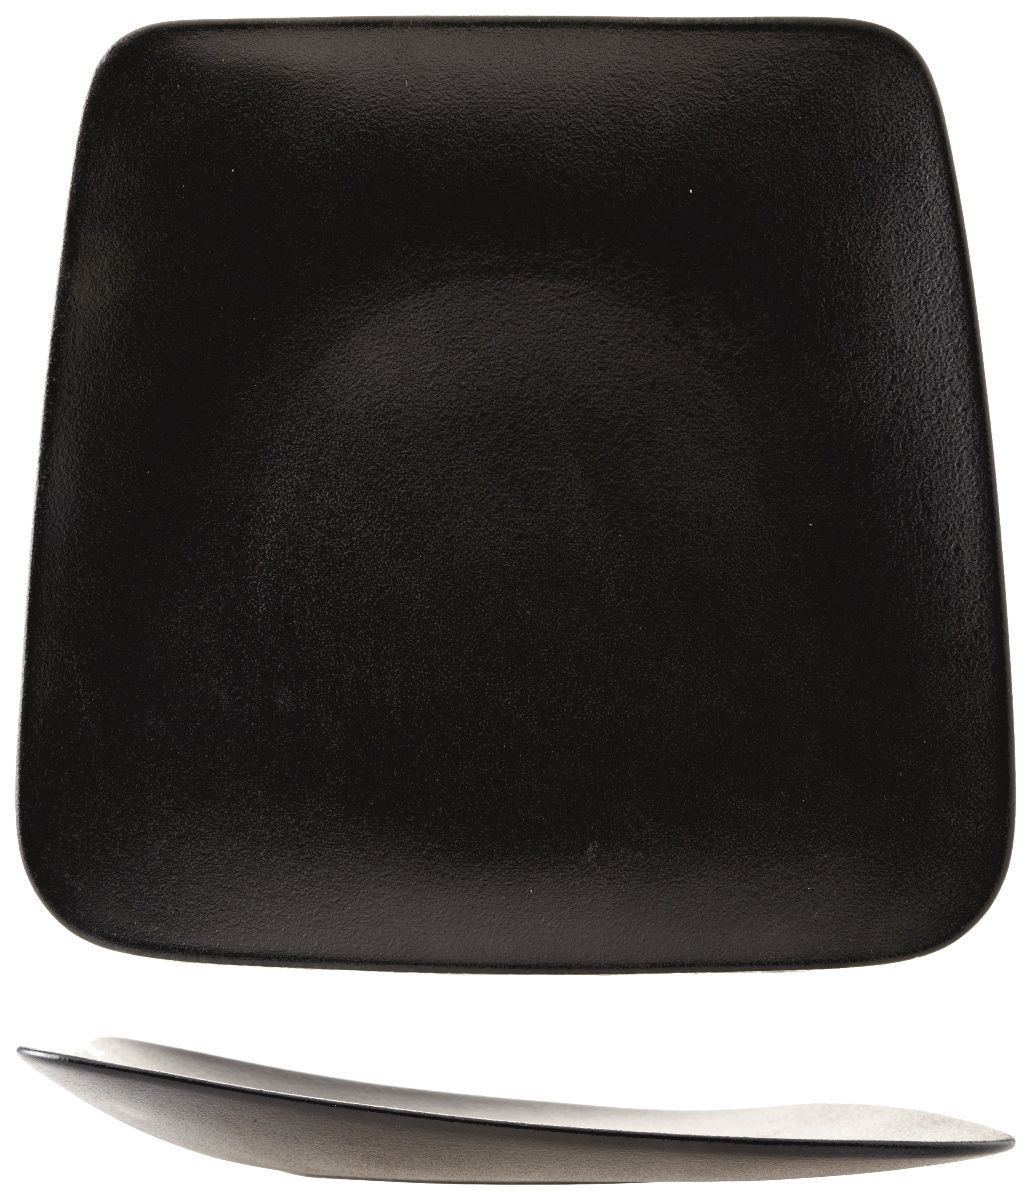 Assiette plate rectangle Blackstone noir 23 x 26 cm Cosy for Pro